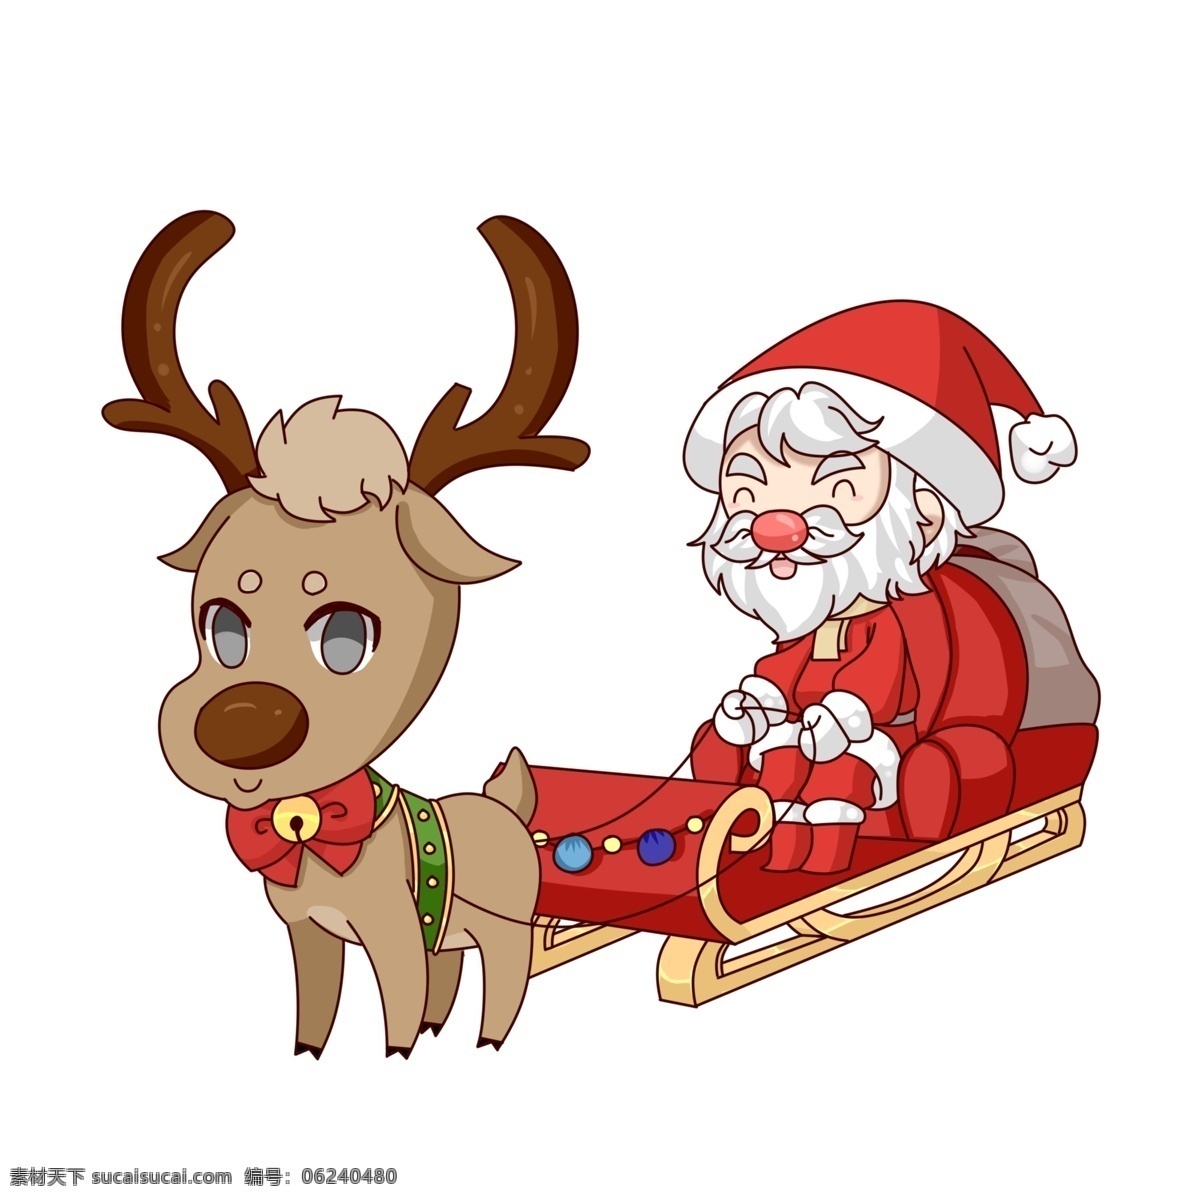 圣诞节 萌 系 圣诞老人 驯鹿 雪橇 元素 圣诞 圣诞夜 可爱 手绘 红色 萌系 礼物 包裹 老人 红鼻子